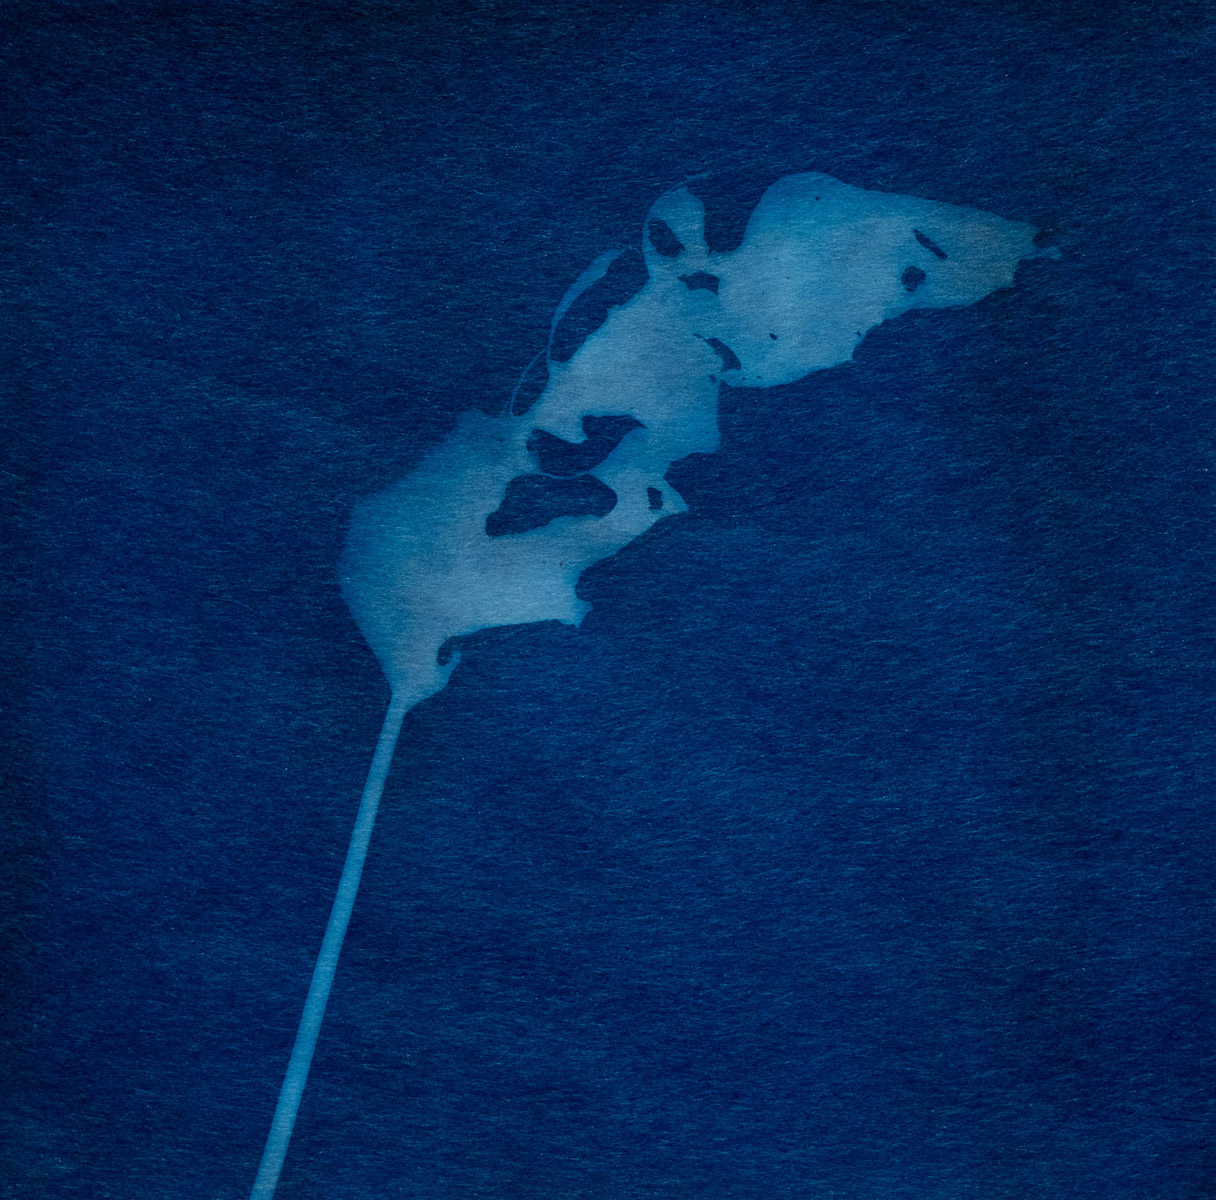 Cyanotype photogram on washi, 2020